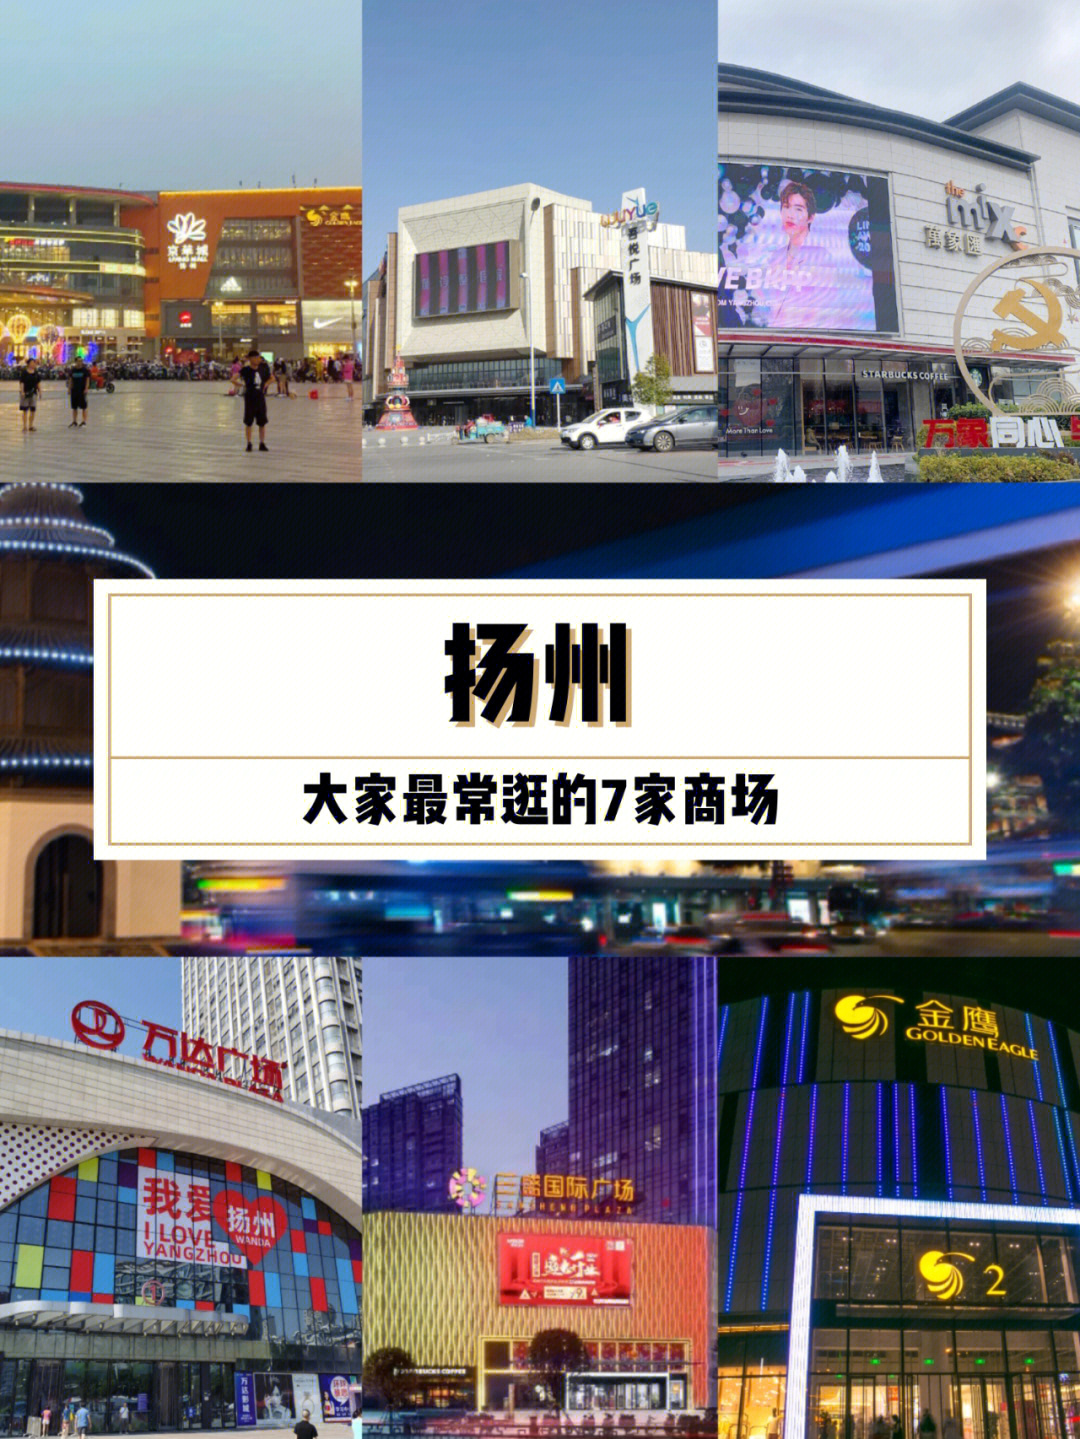 78京华城扬州吃喝玩乐都齐全的综合性商场,空间大